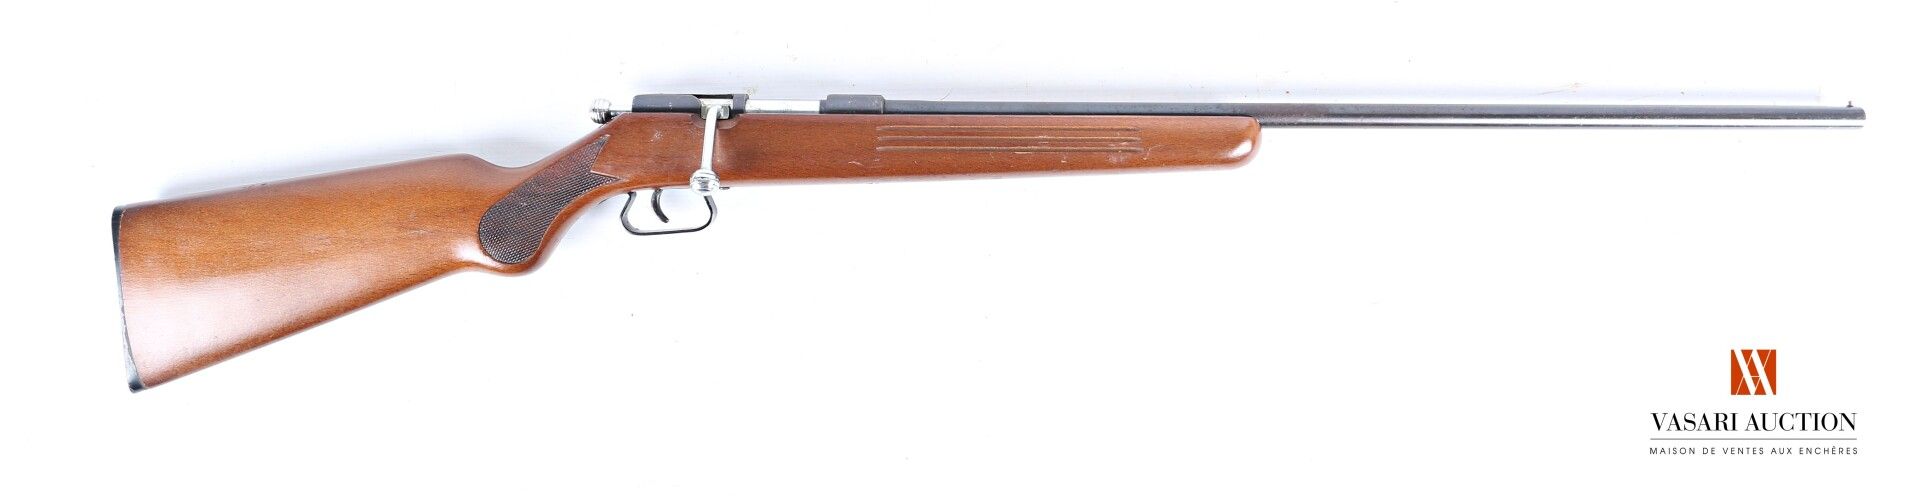 Null 来自圣埃蒂安的单管栓动步枪，口径12毫米，枪管65厘米，磨损，氧化，长度111厘米，编号466 568（RGA AA756）。

C类 1°c